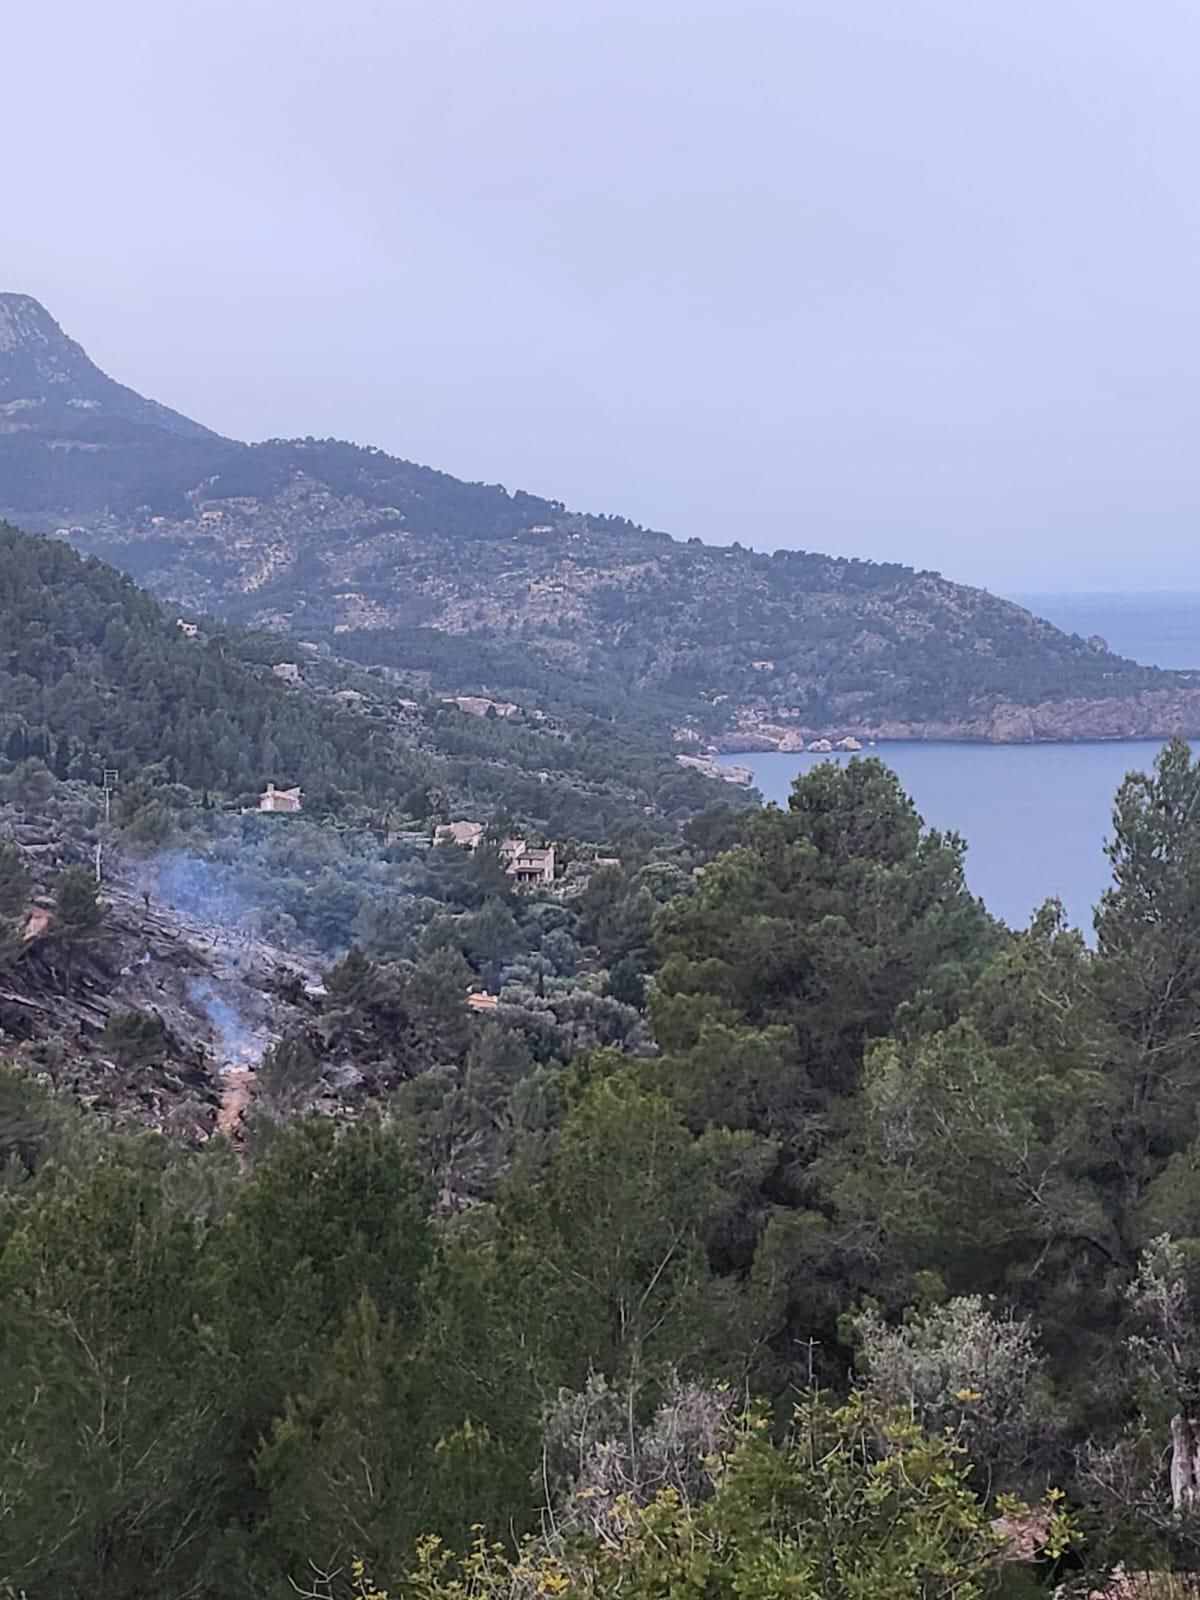 Un incendio forestal obliga a desalojar varias viviendas en Sóller